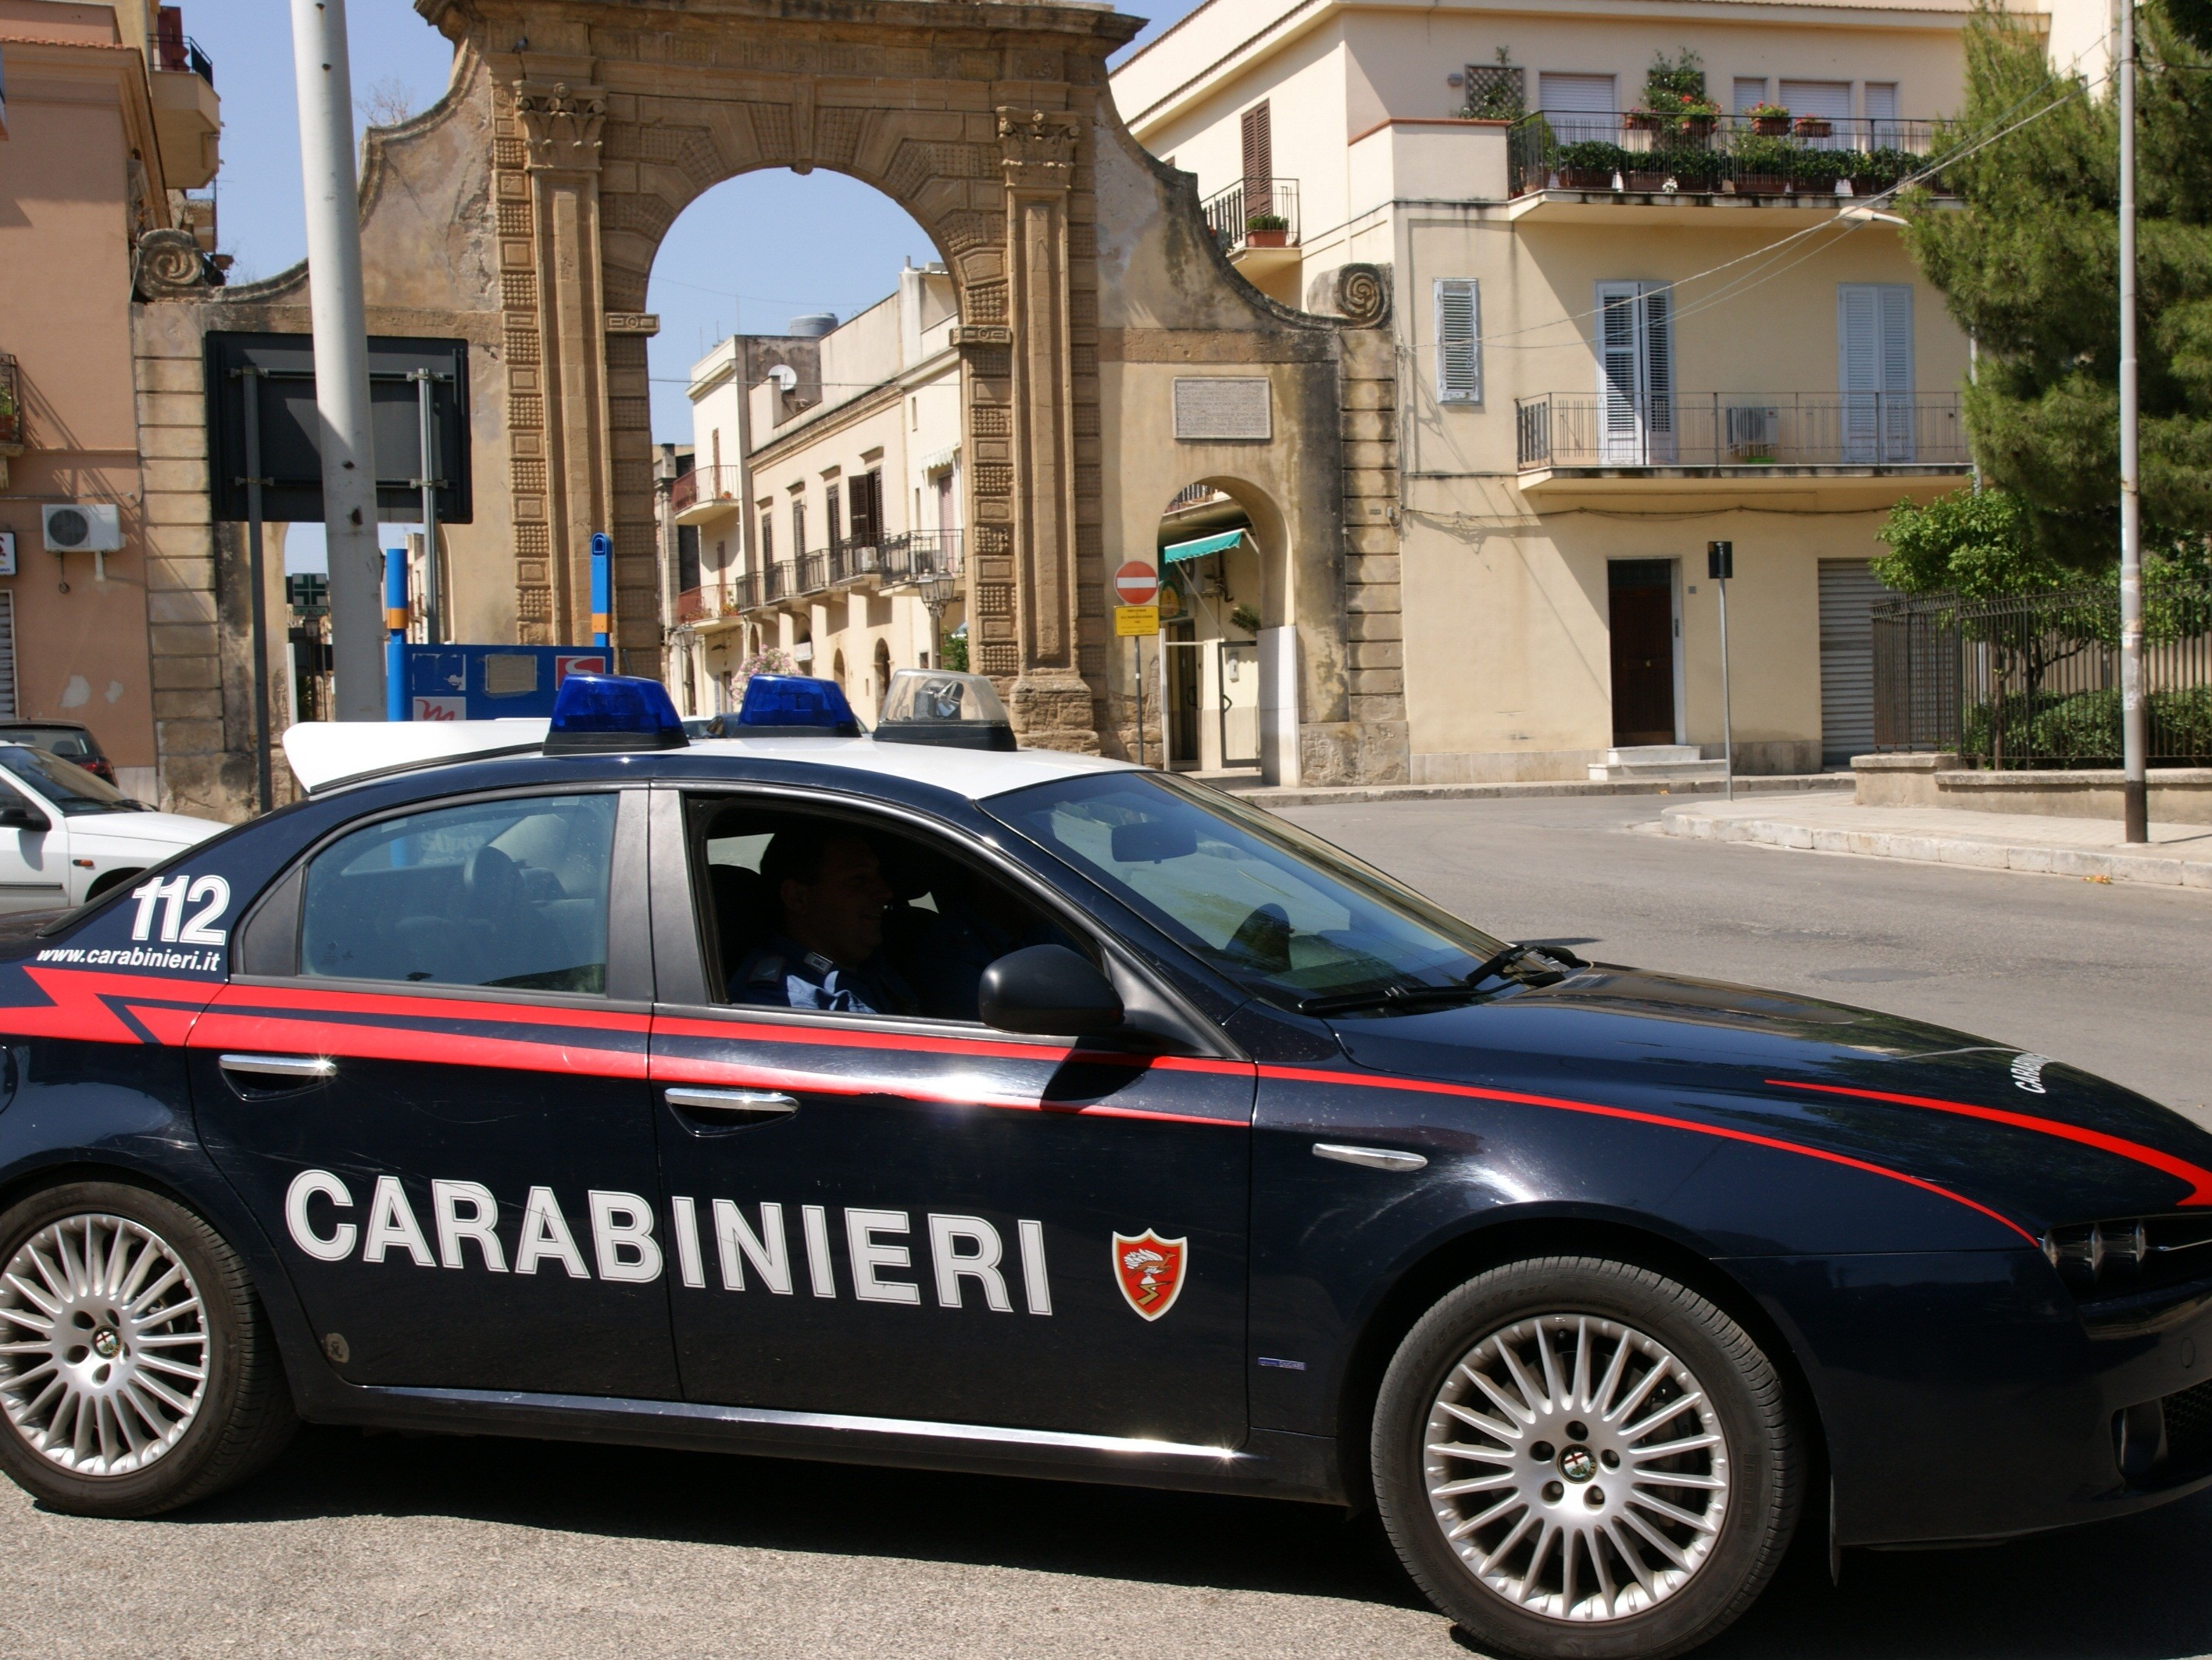 Immagine articolo: CVetrano, disturbava al Pronto Soccorso e poi aggrediva i Carabinieri intervenuti per calmarlo. Arrestato castelvetranese